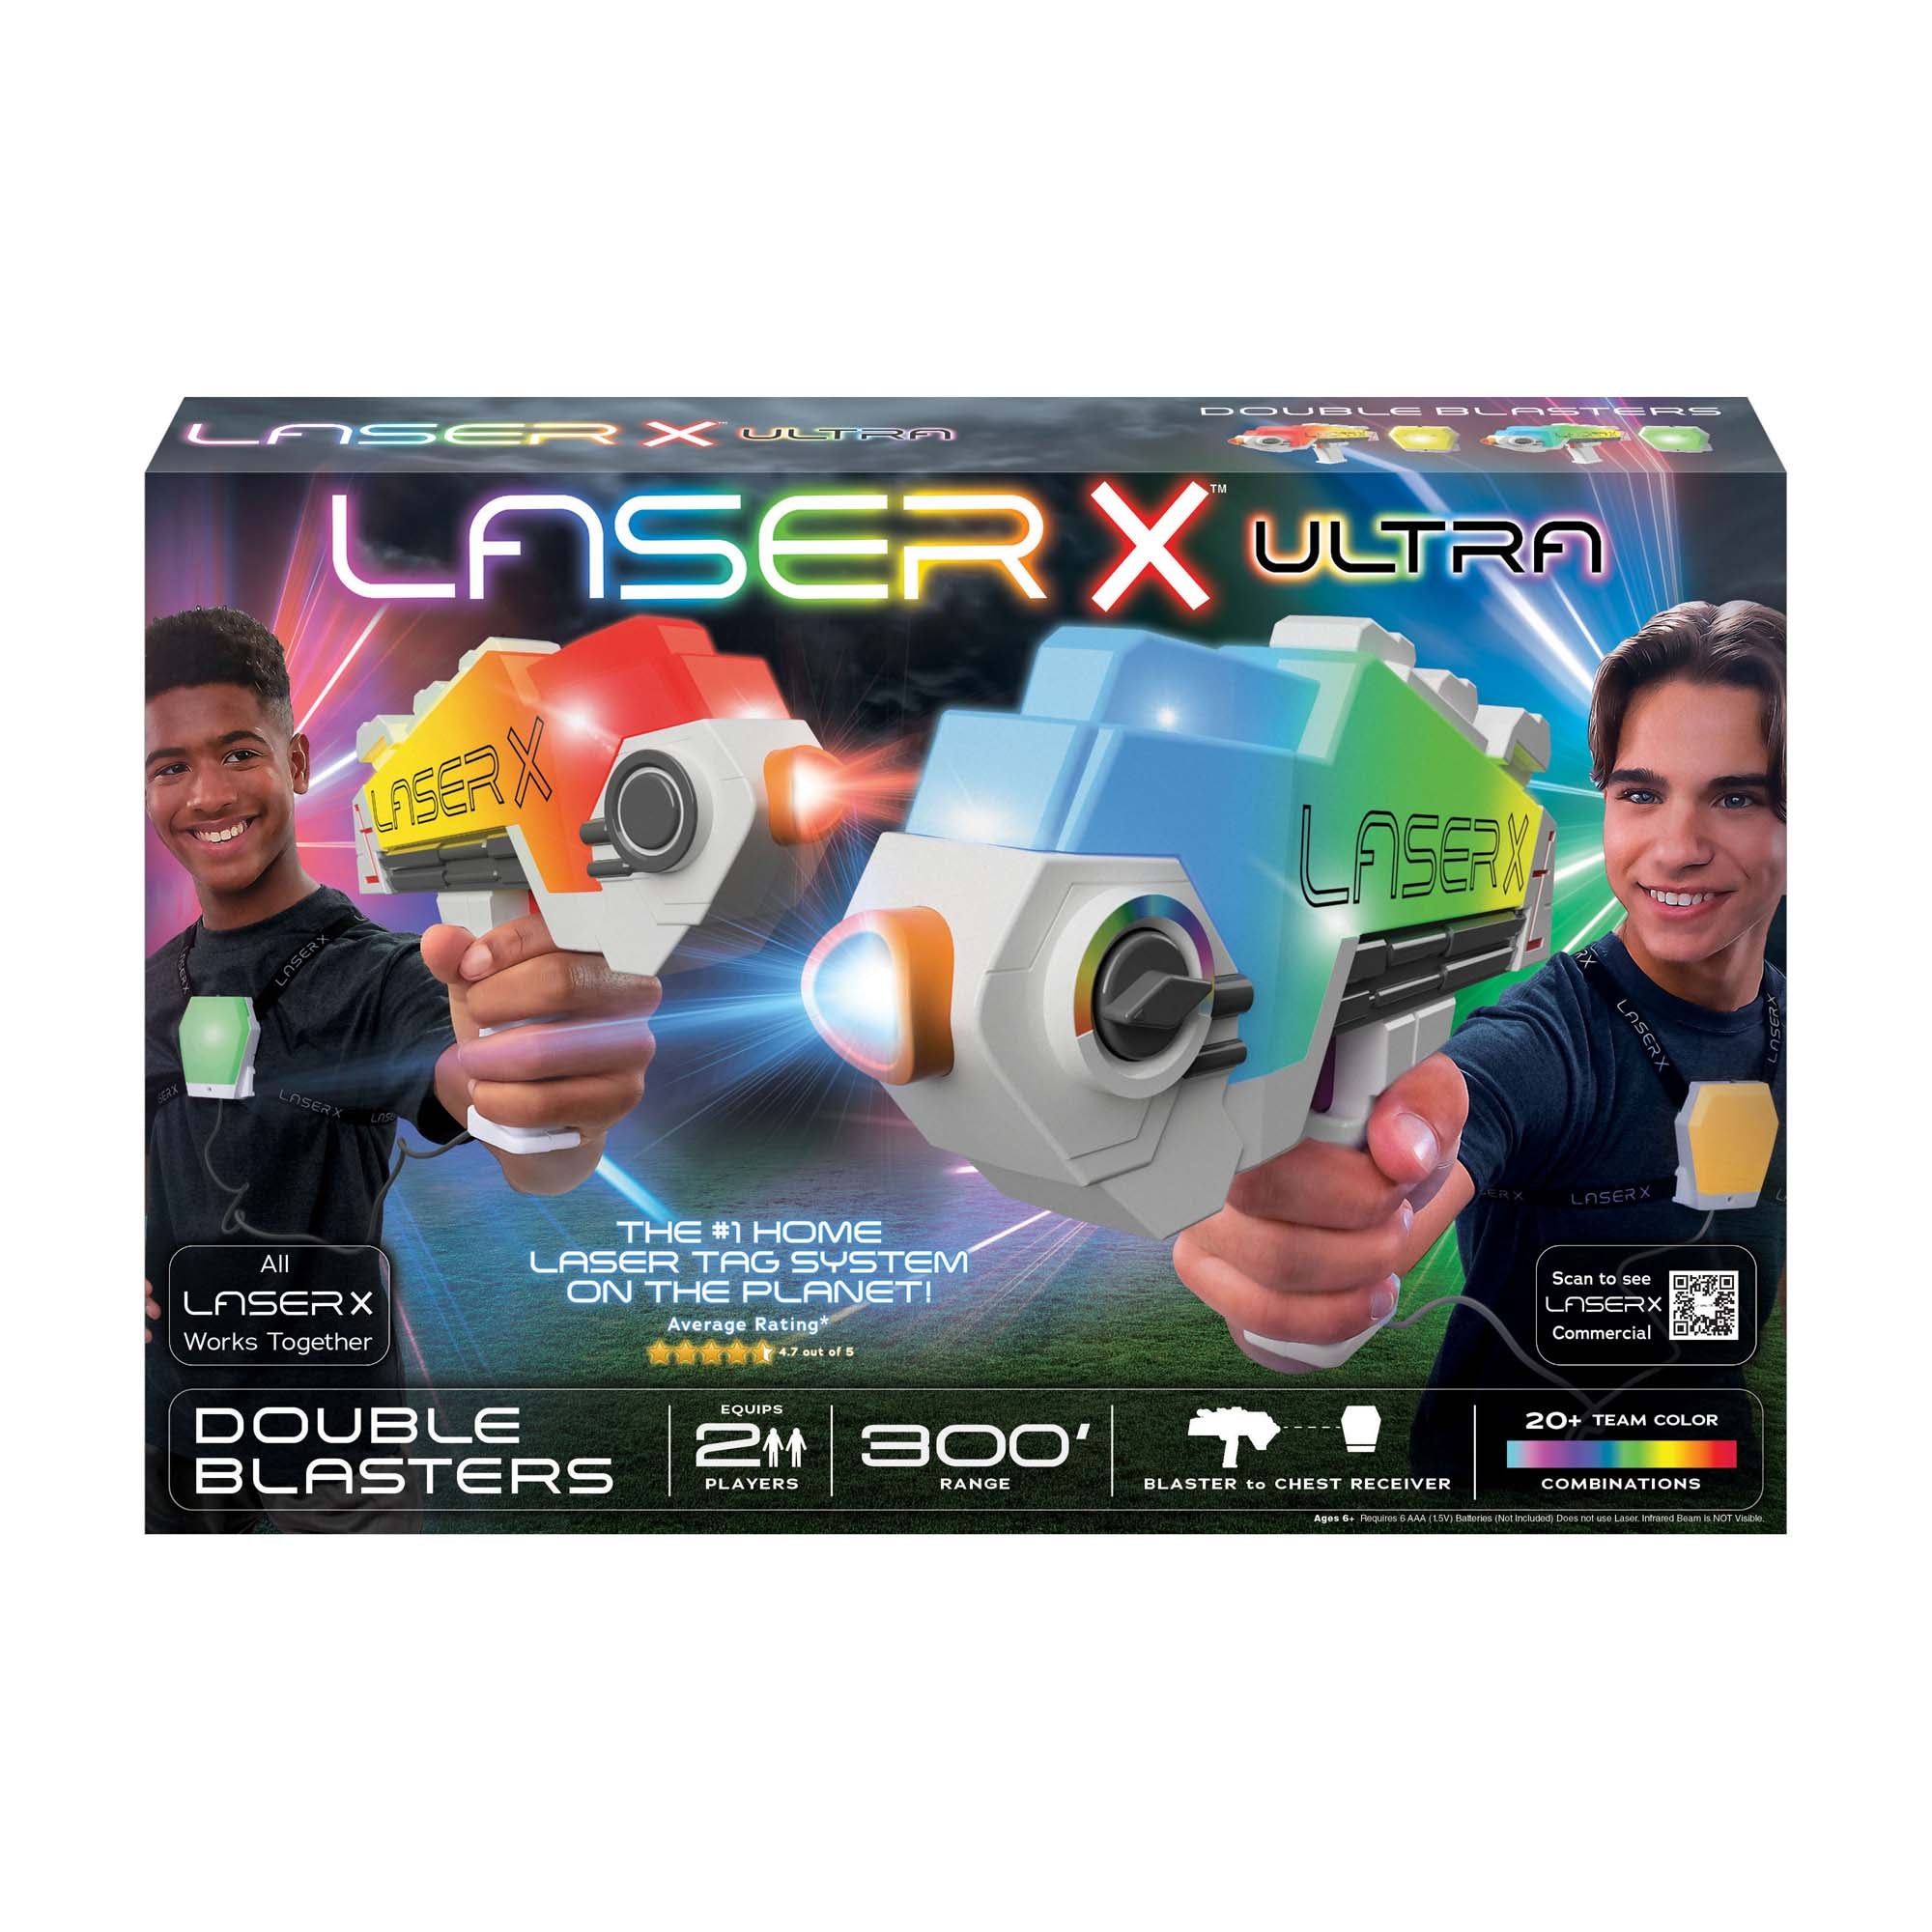 Laser X